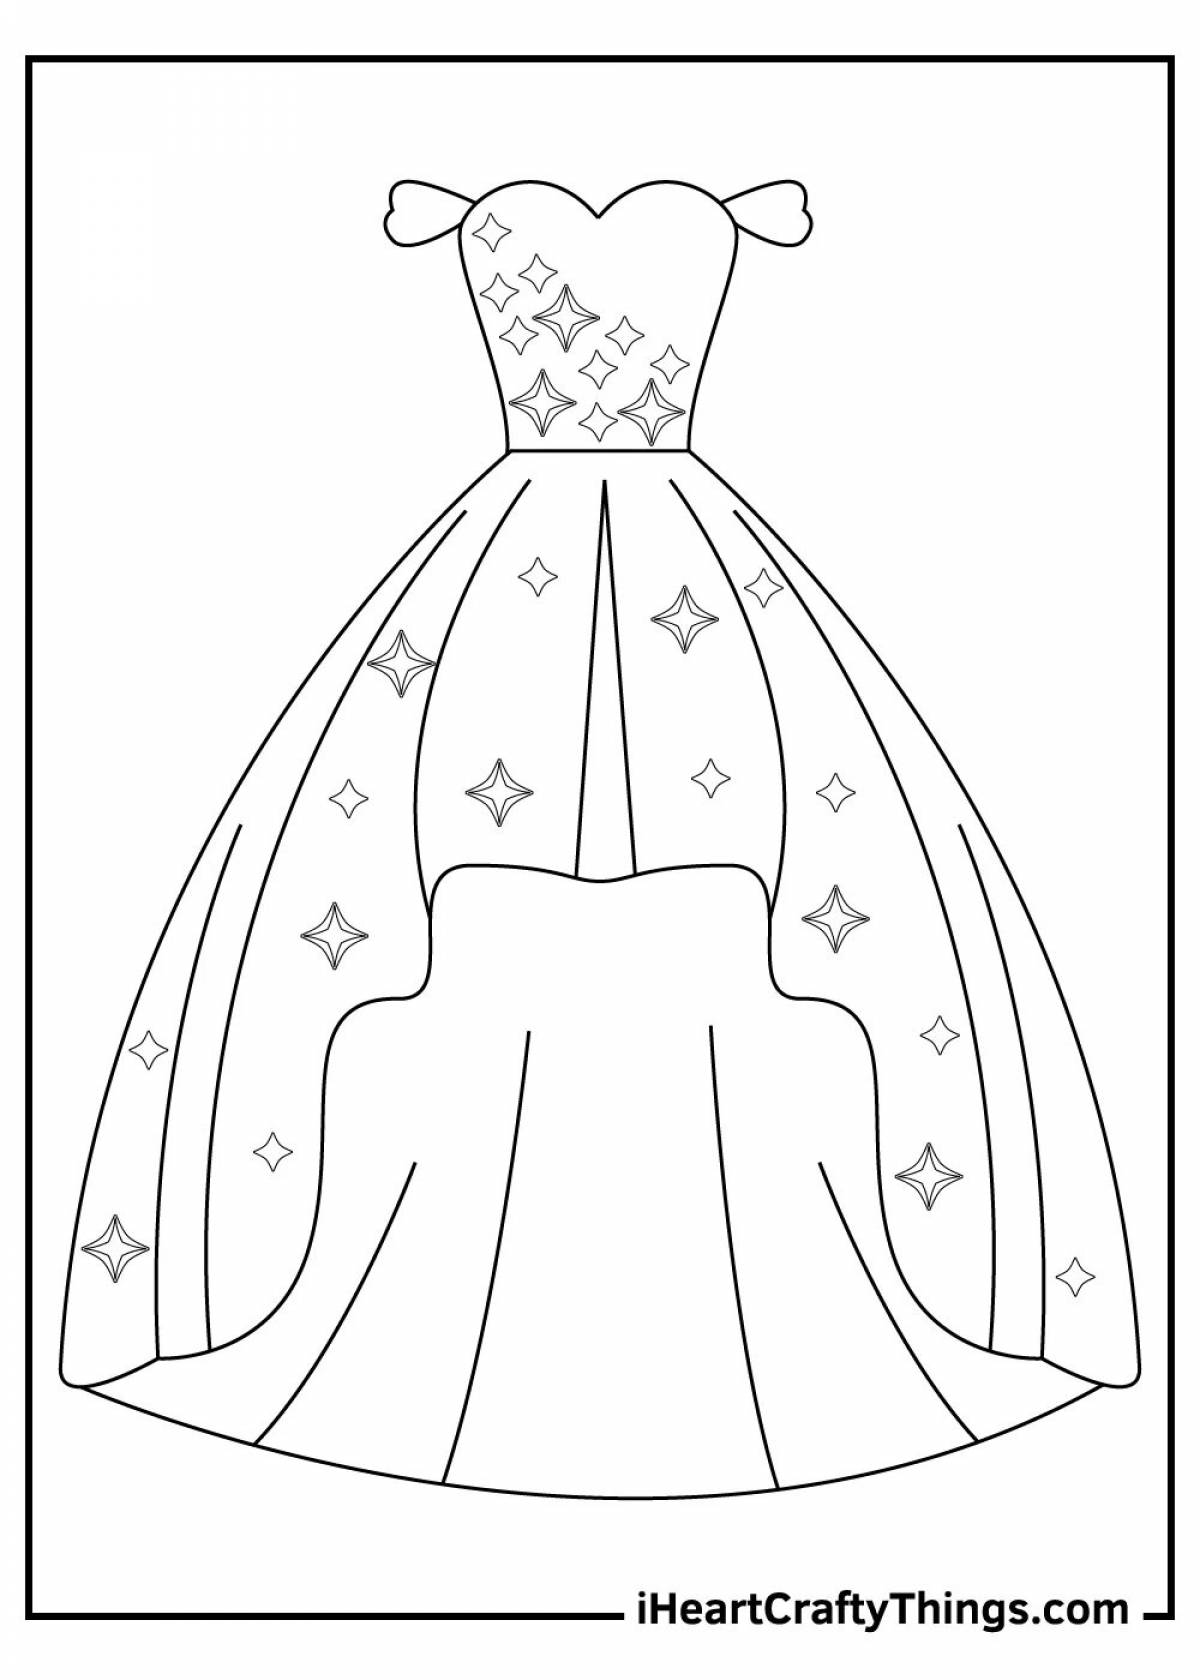 Раскраска роскошное кукольное платье для детей 4-5 лет